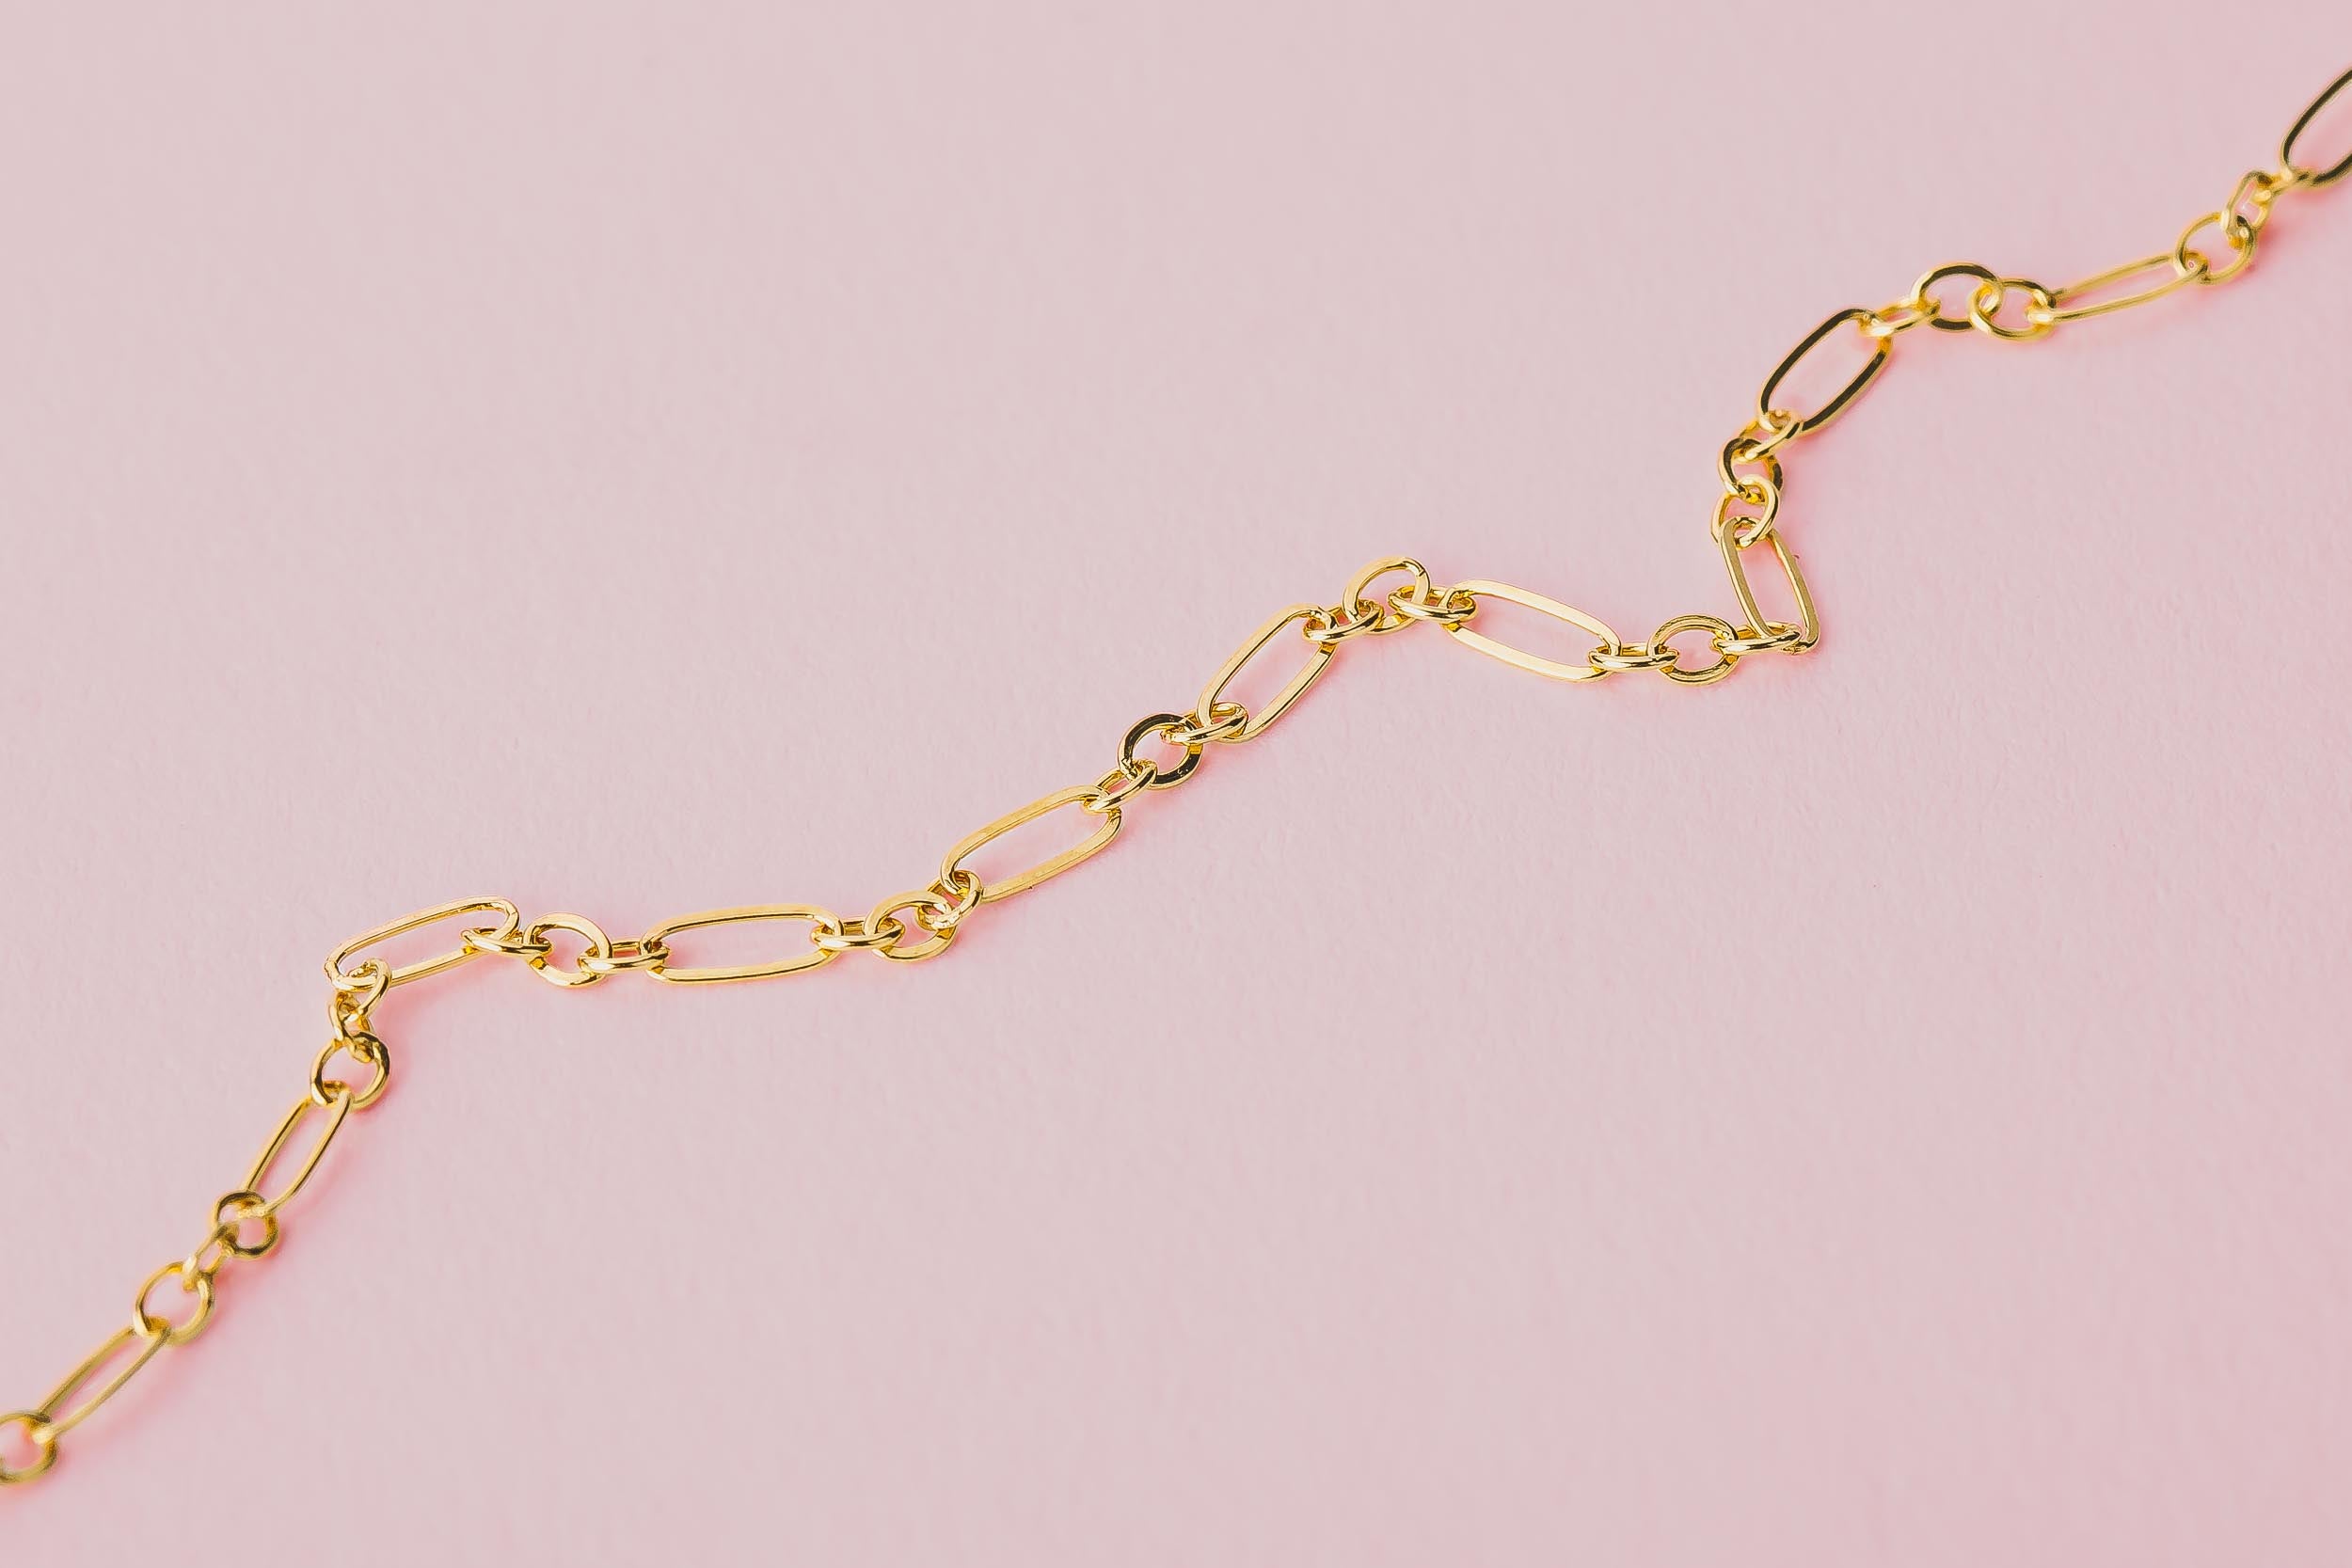 Chain Bracelets - Melanie Golden Jewelry - www.melaniegolden.com - United States